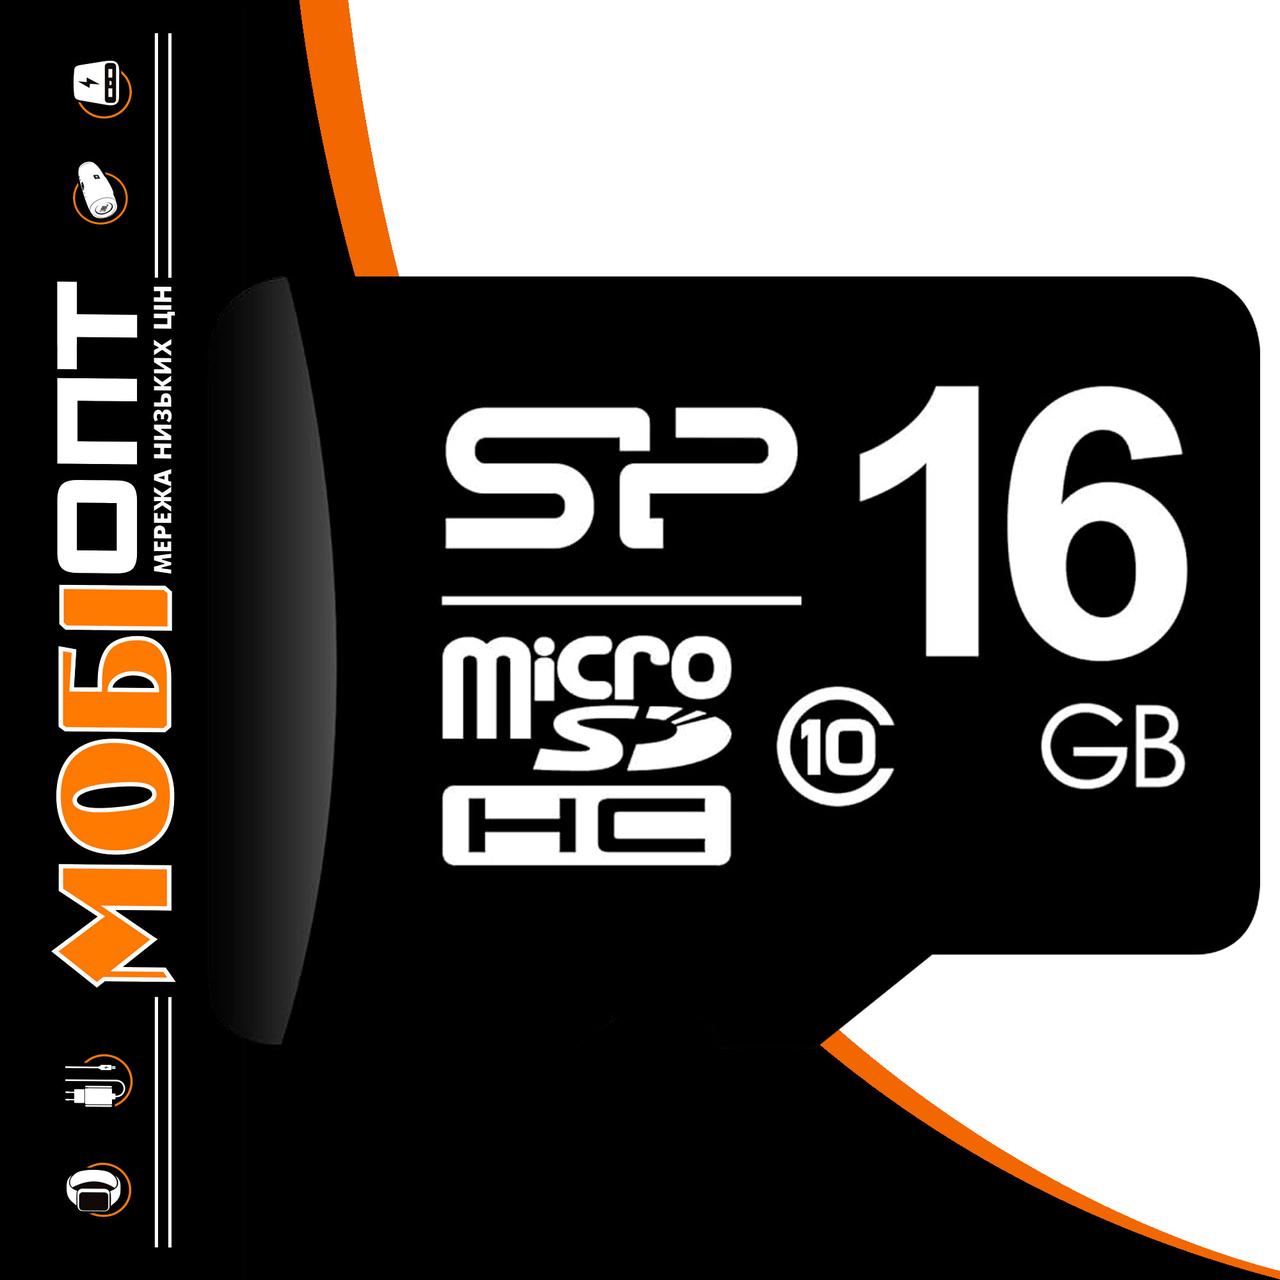 Micro SD 16GB/10 class Silicon Power